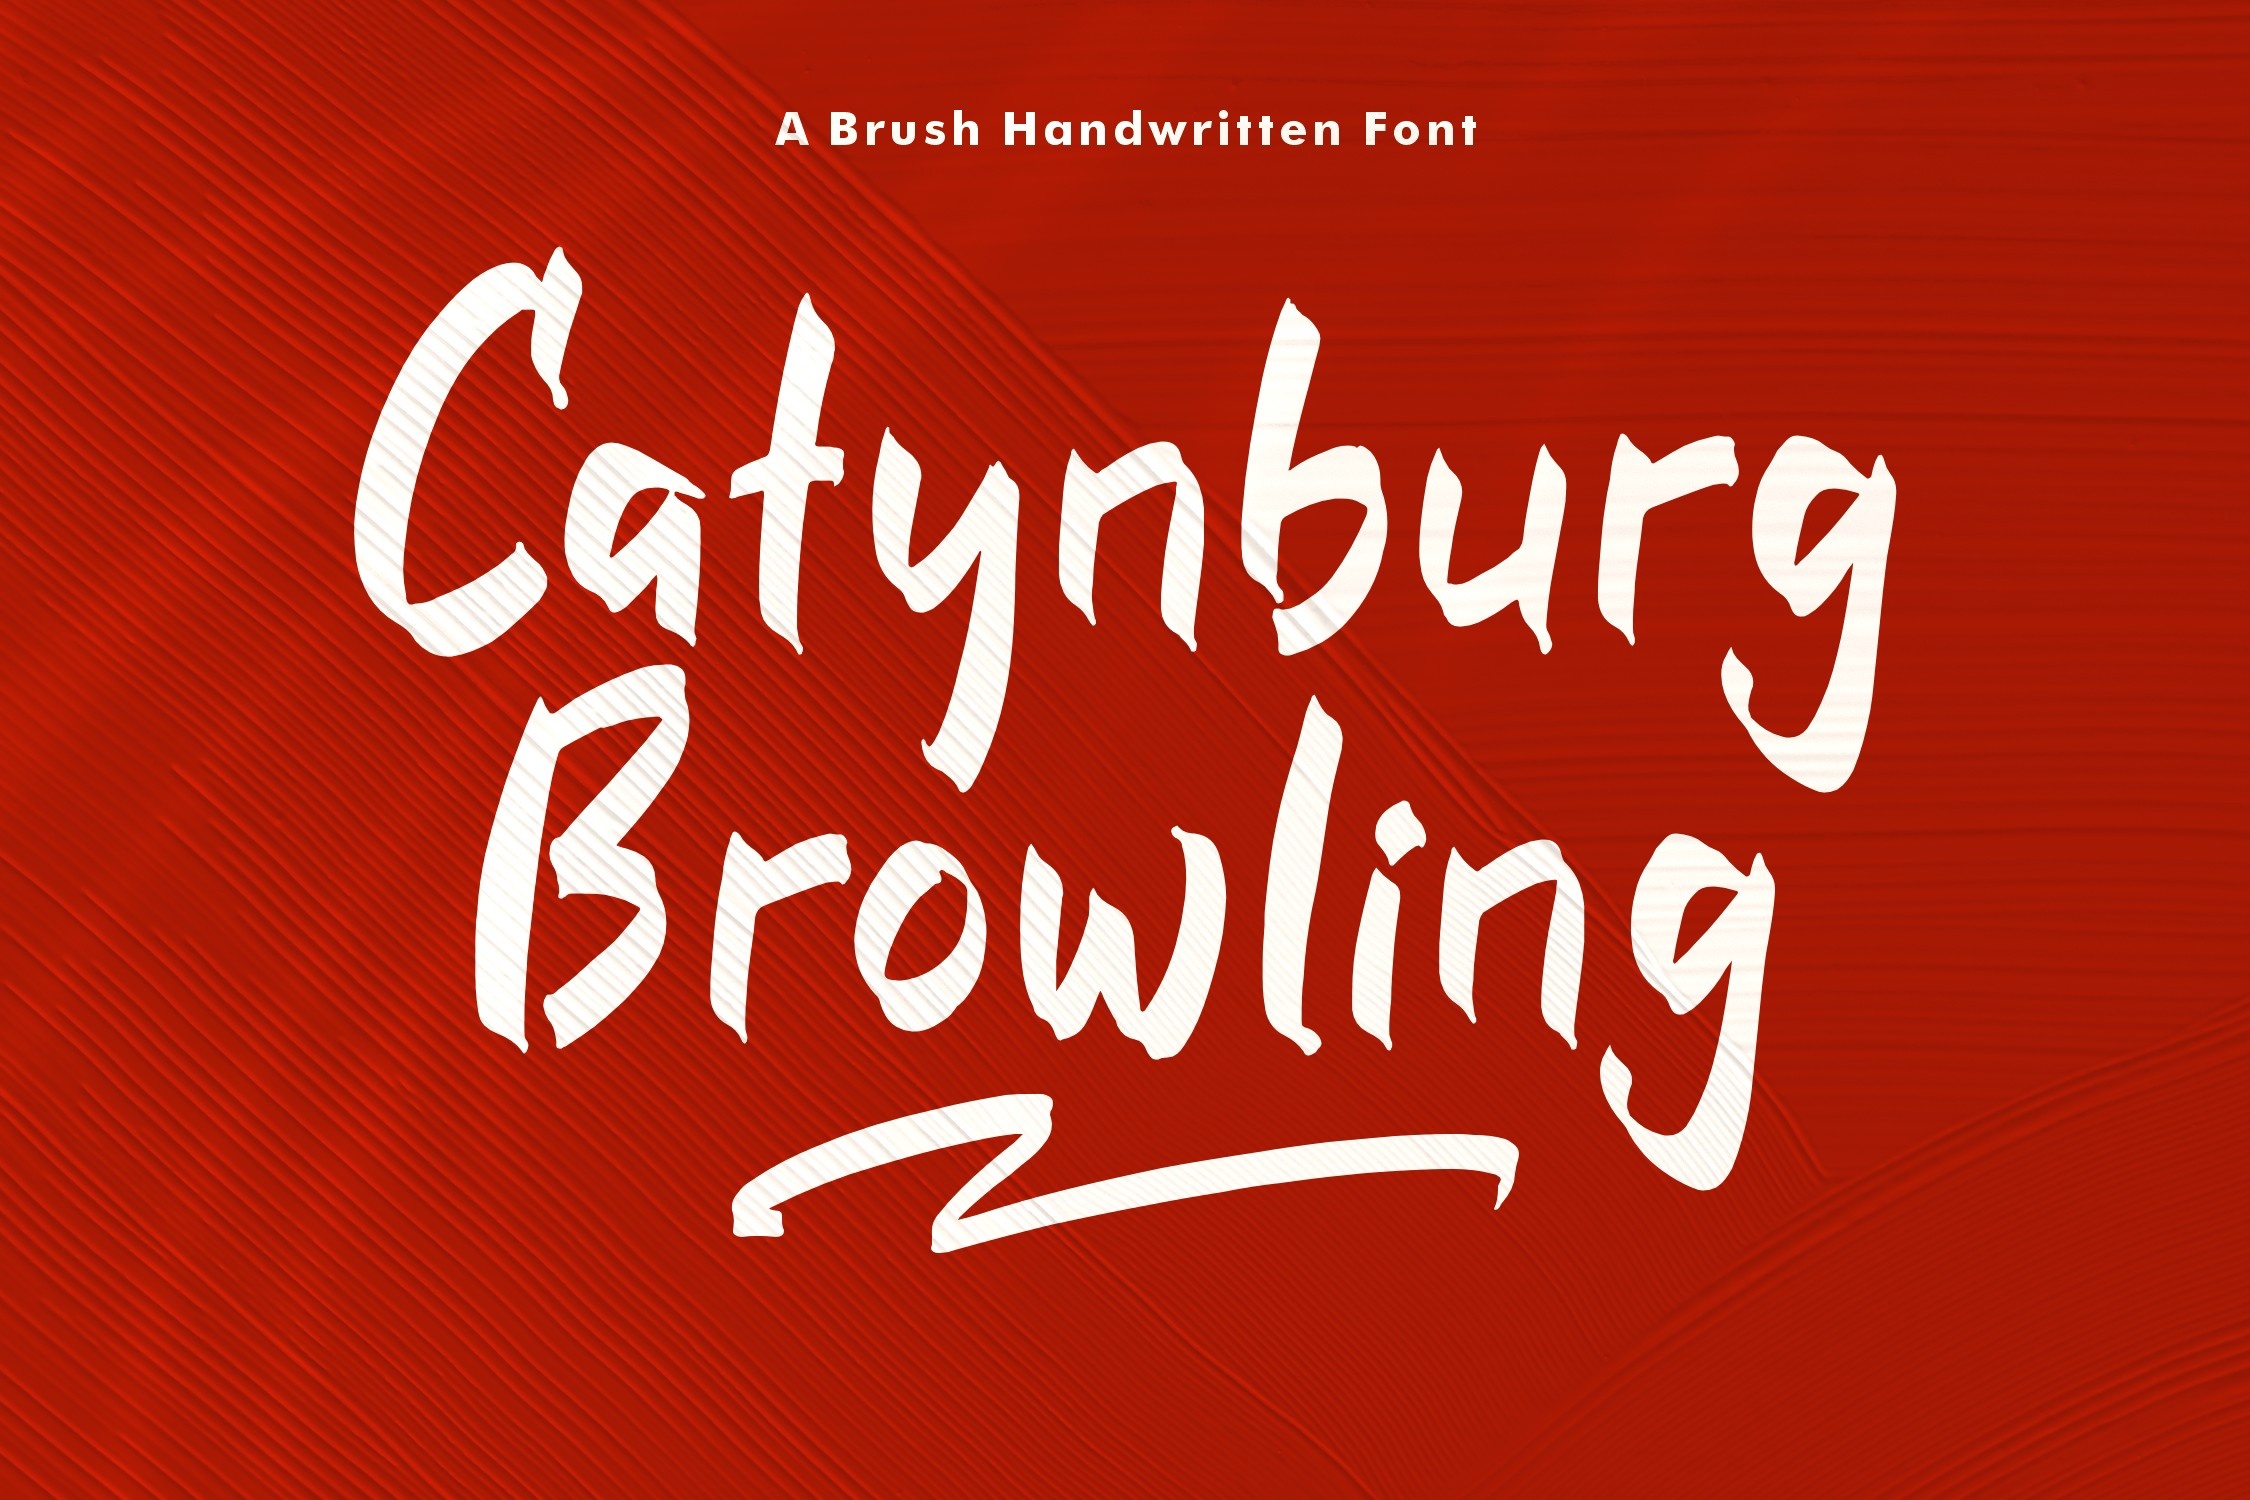 Catynburg Browling